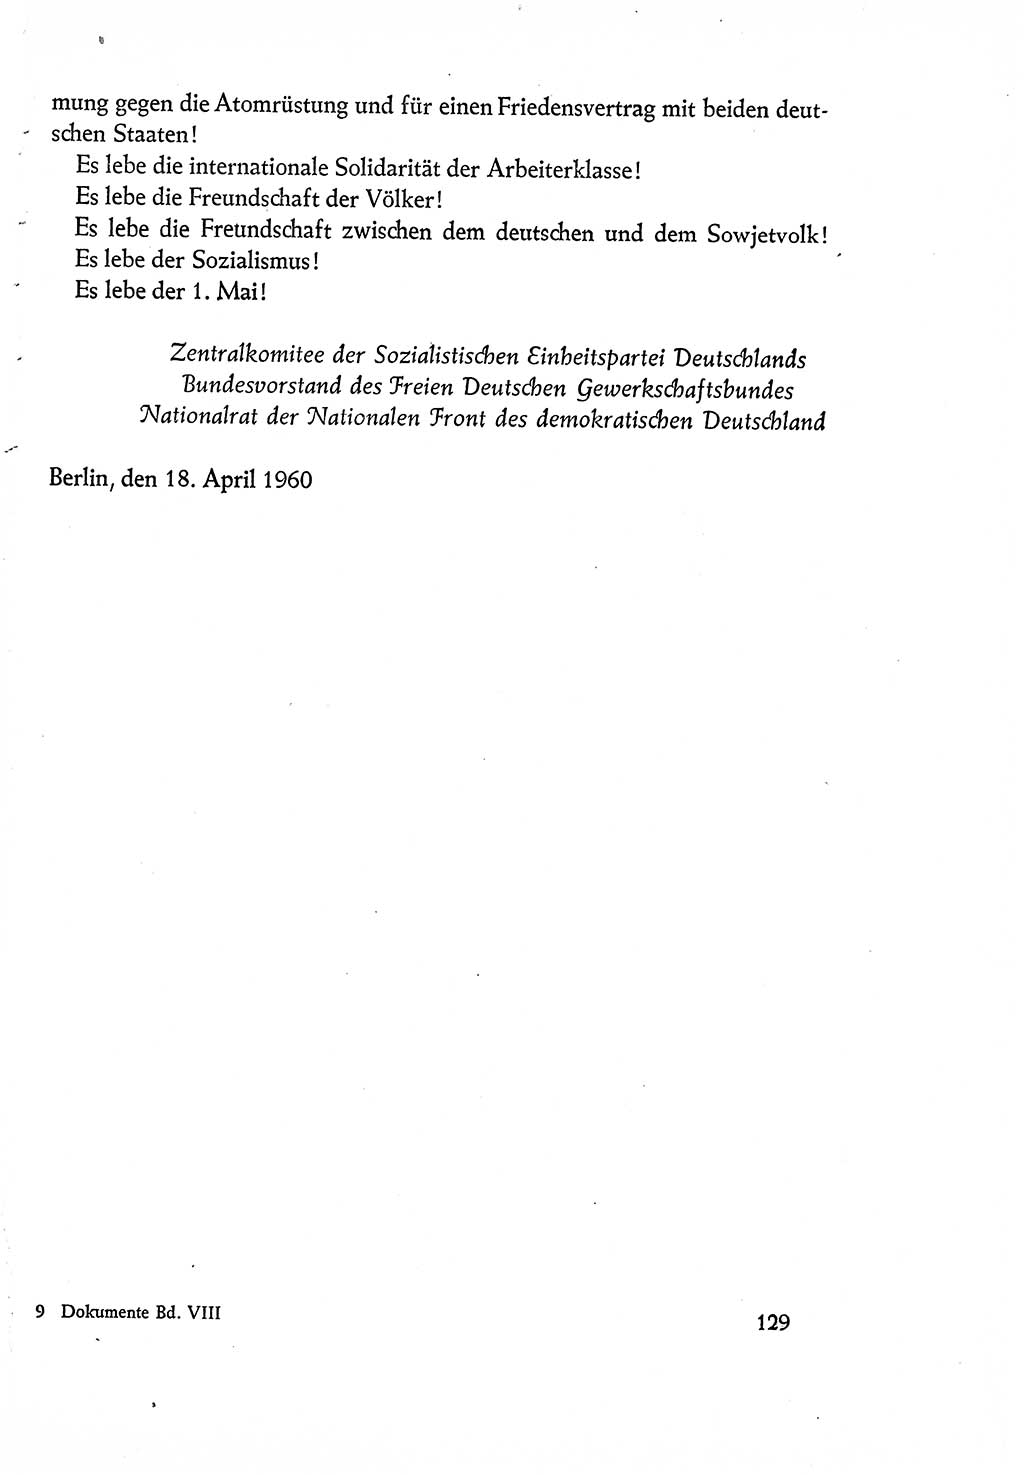 Dokumente der Sozialistischen Einheitspartei Deutschlands (SED) [Deutsche Demokratische Republik (DDR)] 1960-1961, Seite 129 (Dok. SED DDR 1960-1961, S. 129)